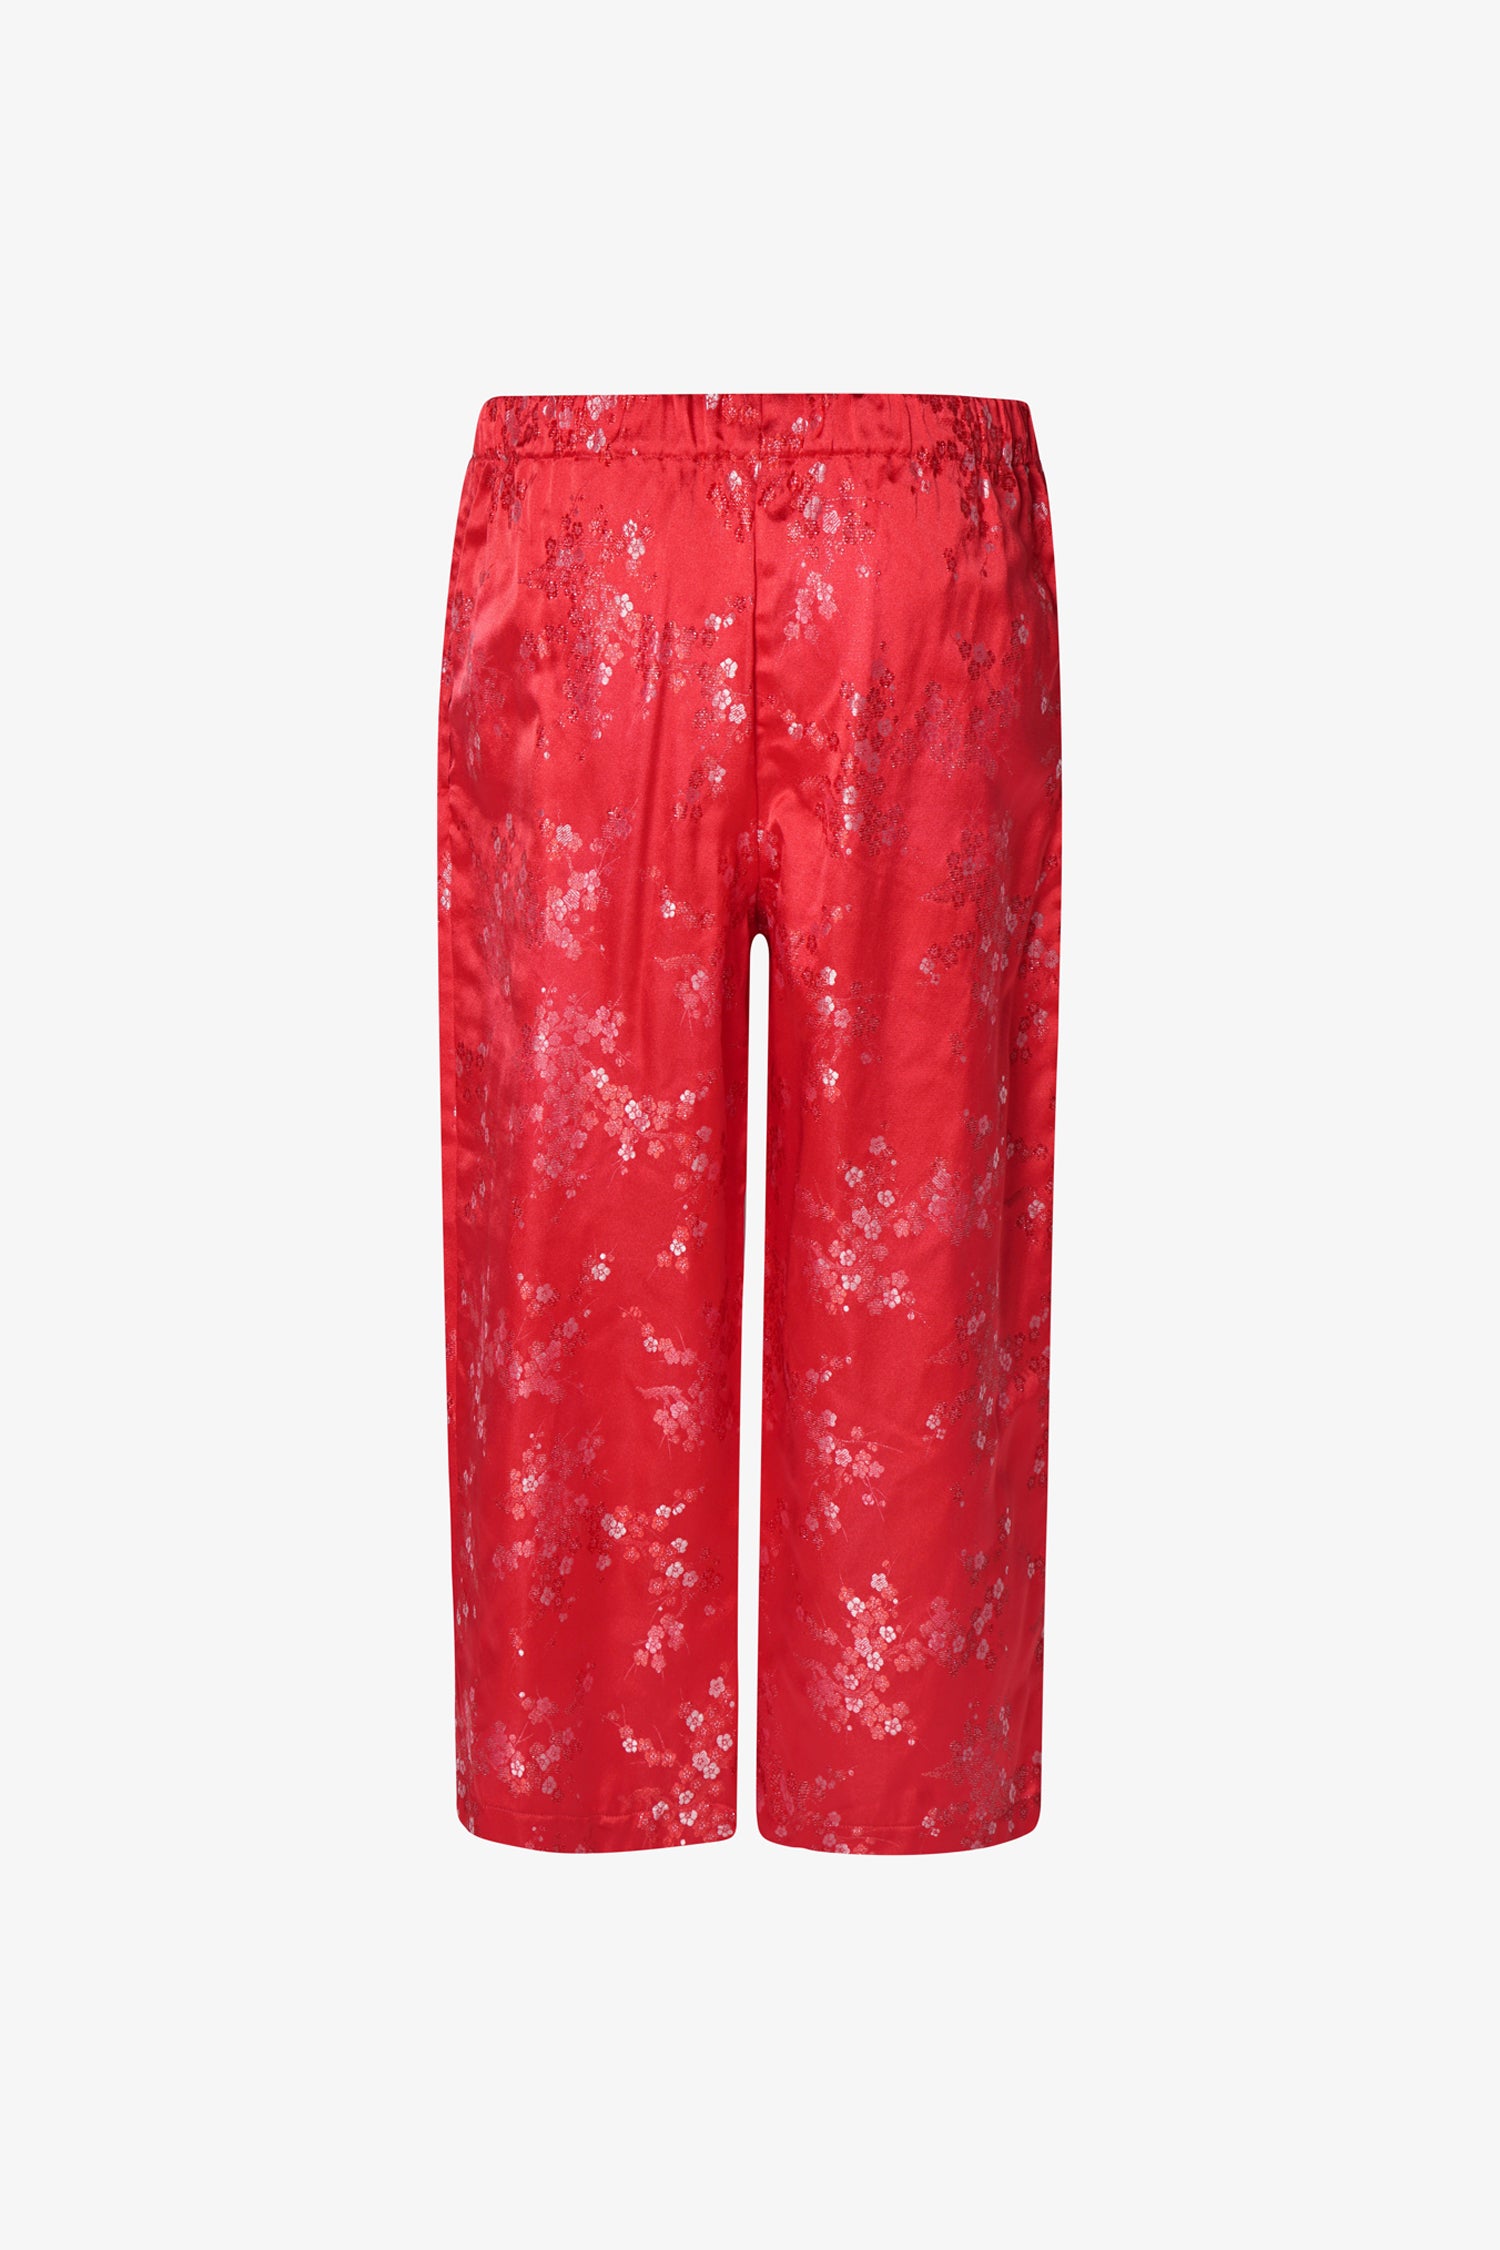 Selectshop FRAME - COMME DES GARCONS COMME DES GARCONS Embroidered-Floral Cropped Trousers Bottoms Dubai